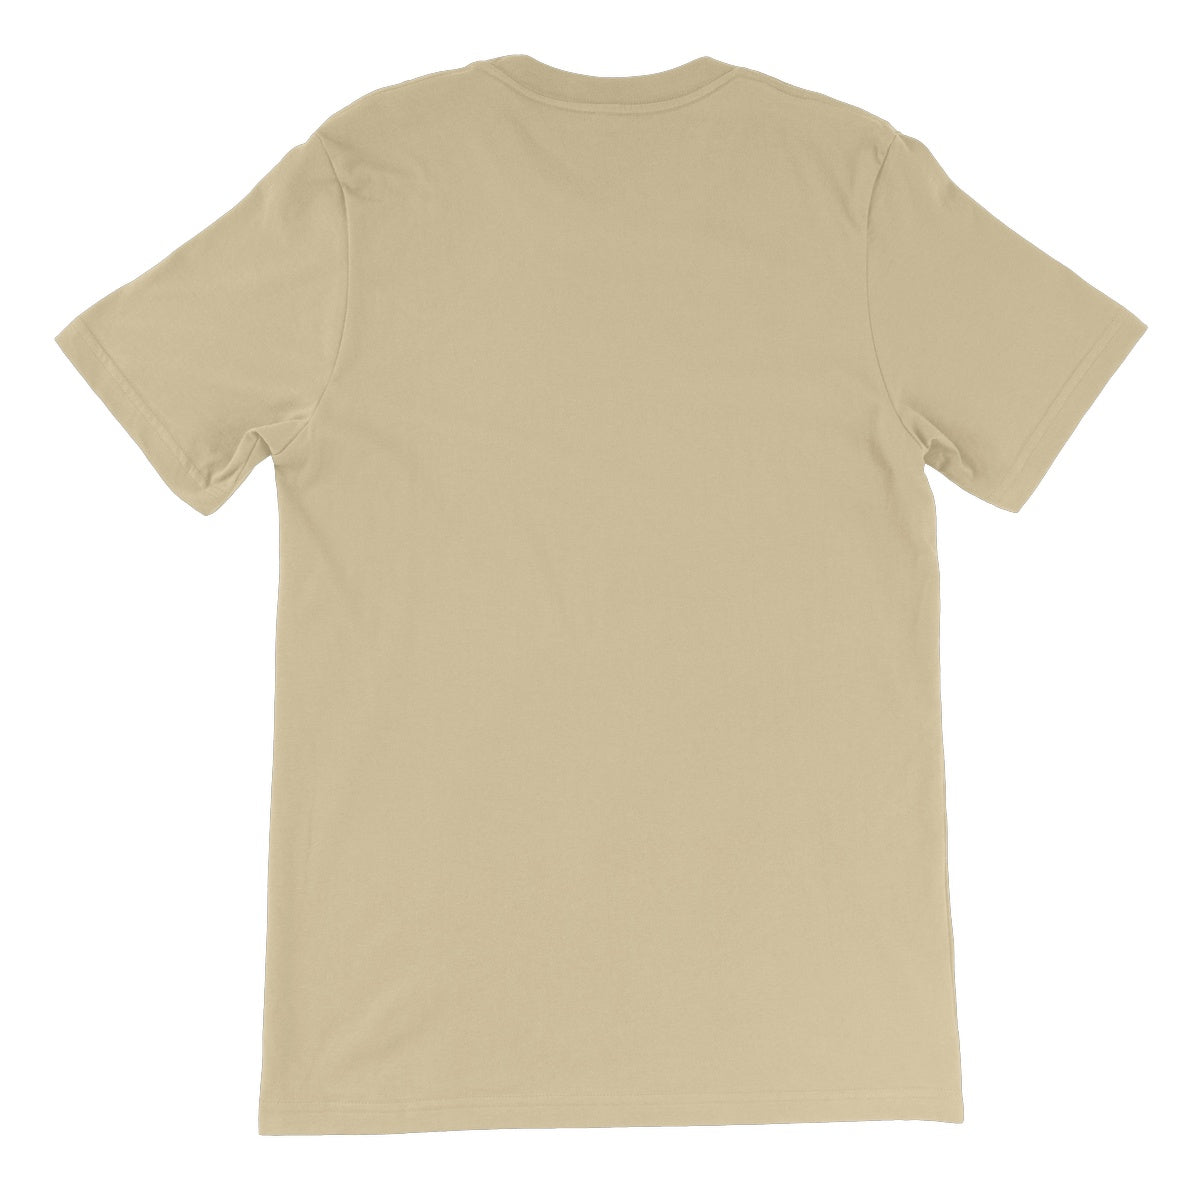 Loxodromes, Pond Unisex Short Sleeve T-Shirt